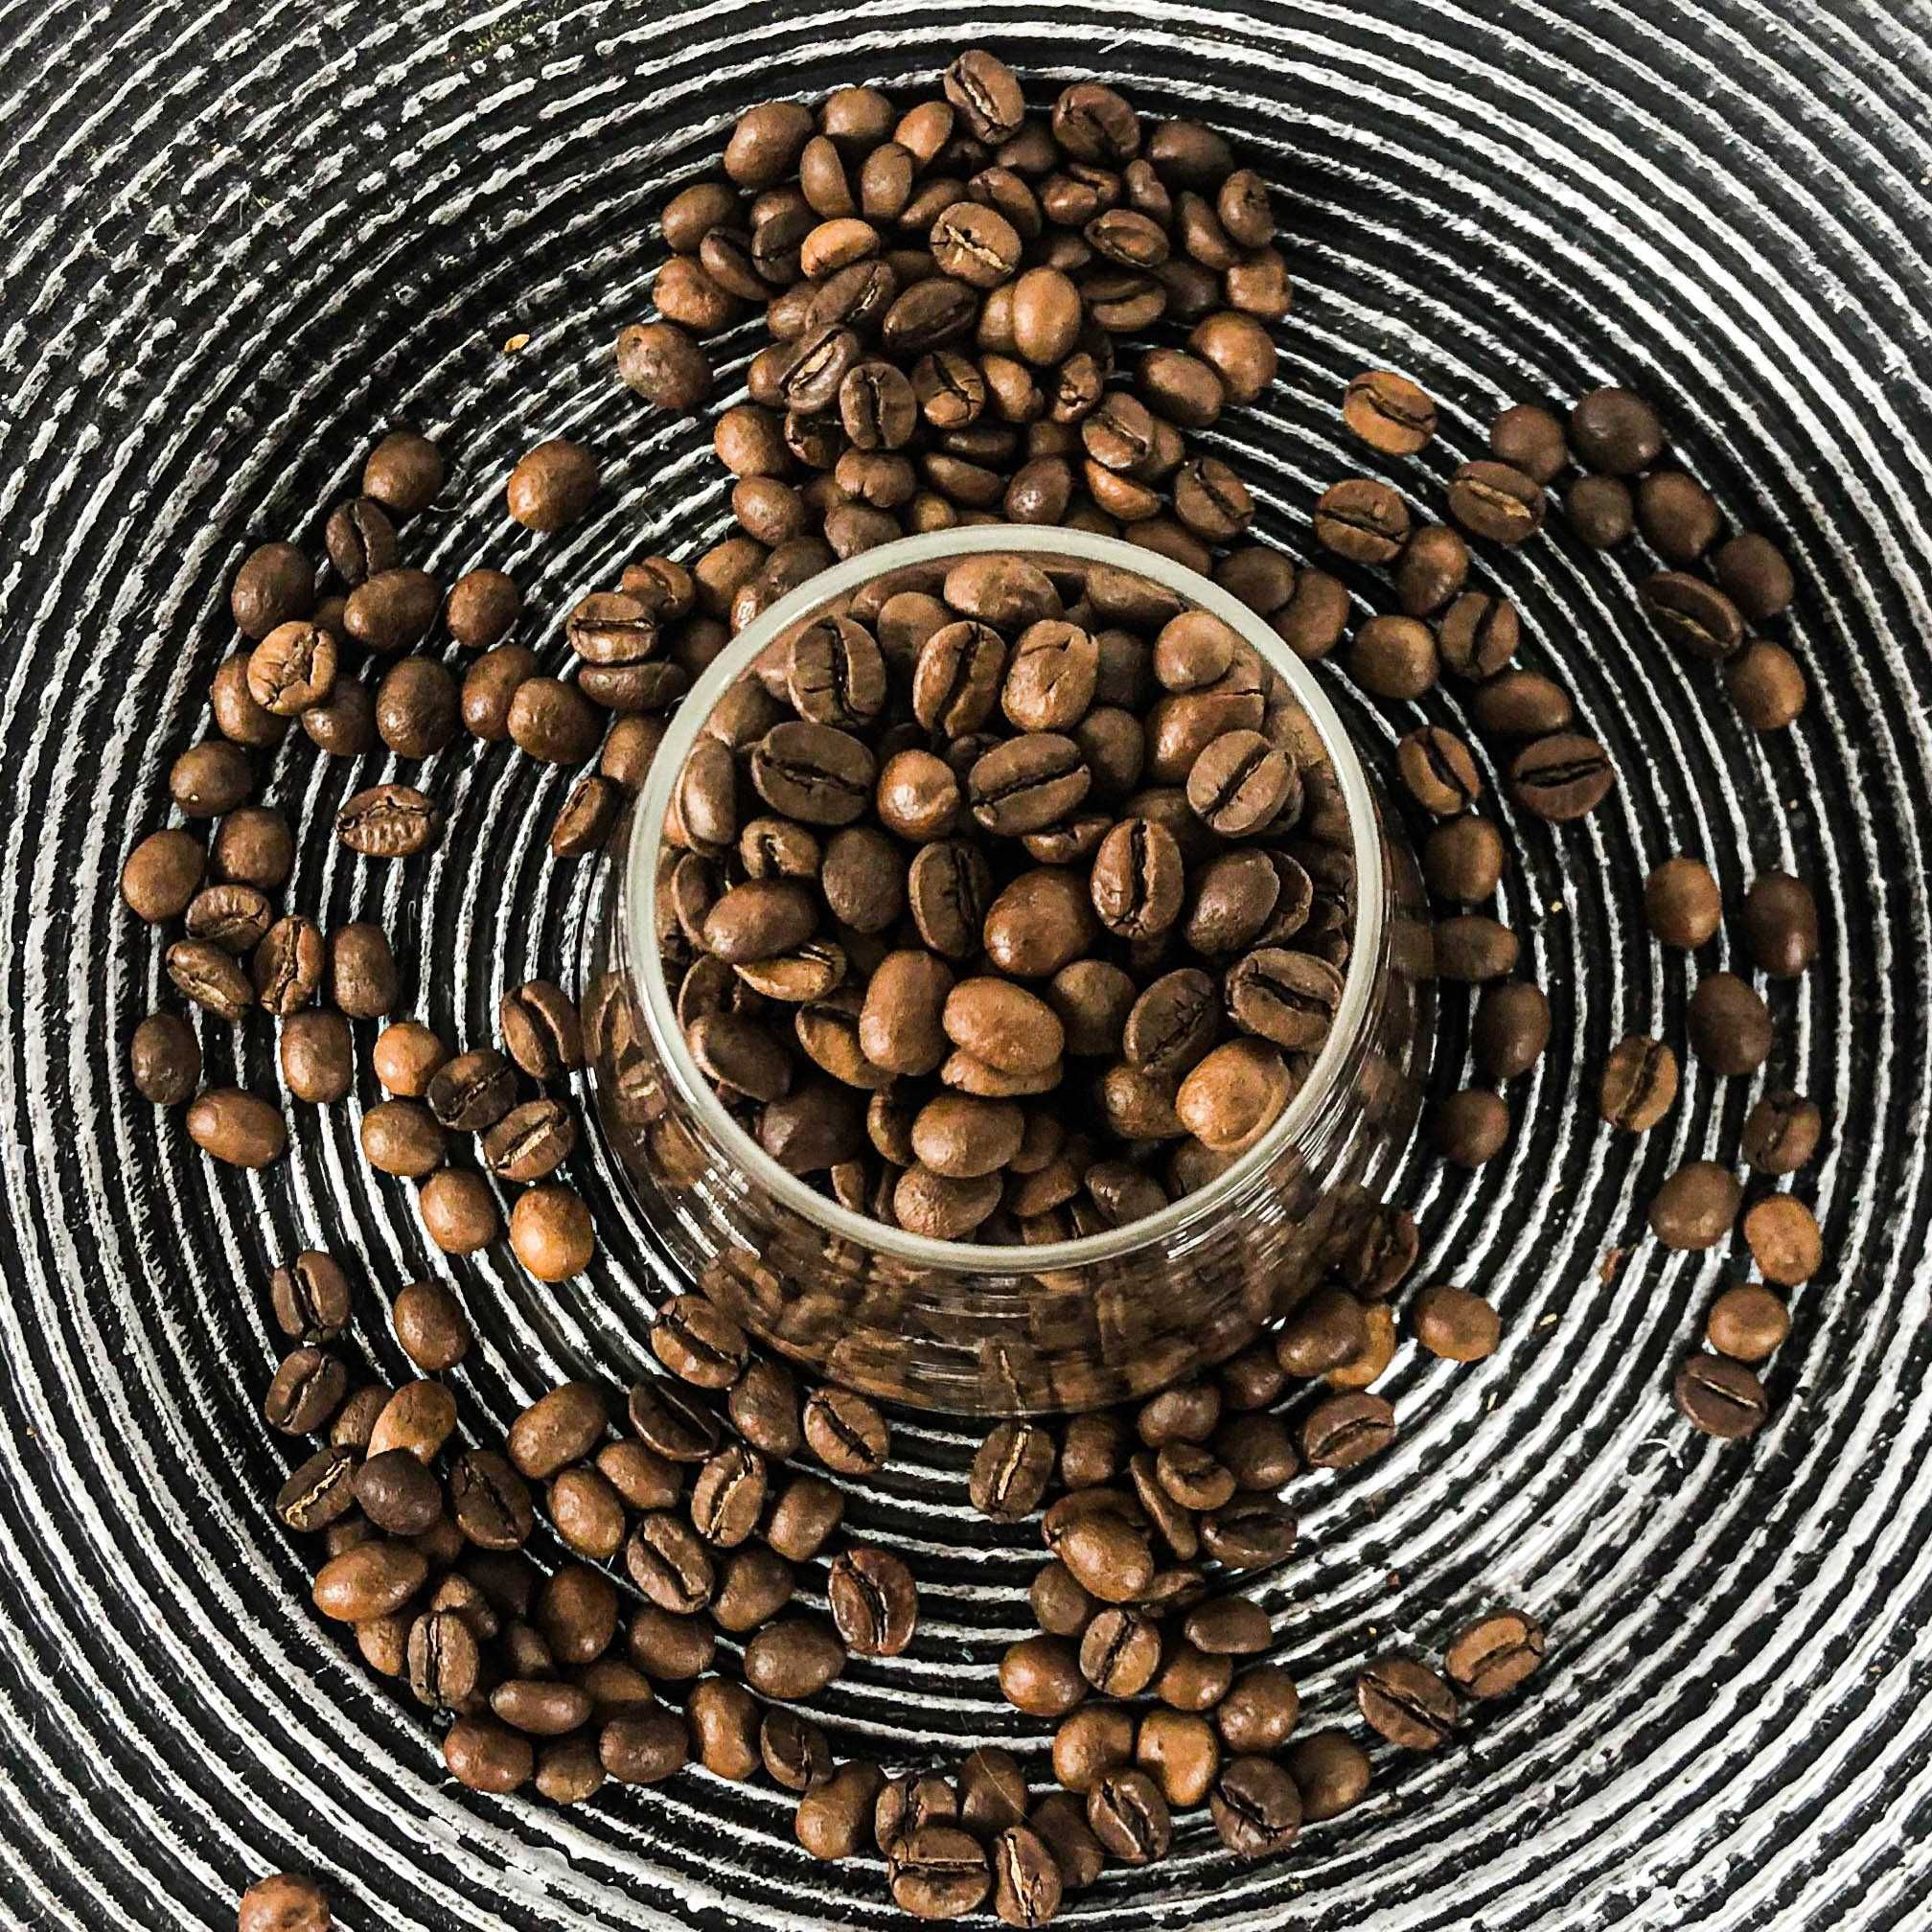 СРОЧНАЯ СДЕЛКА кофе в зернах 60%40% для бизнеса и дома. Производитель!